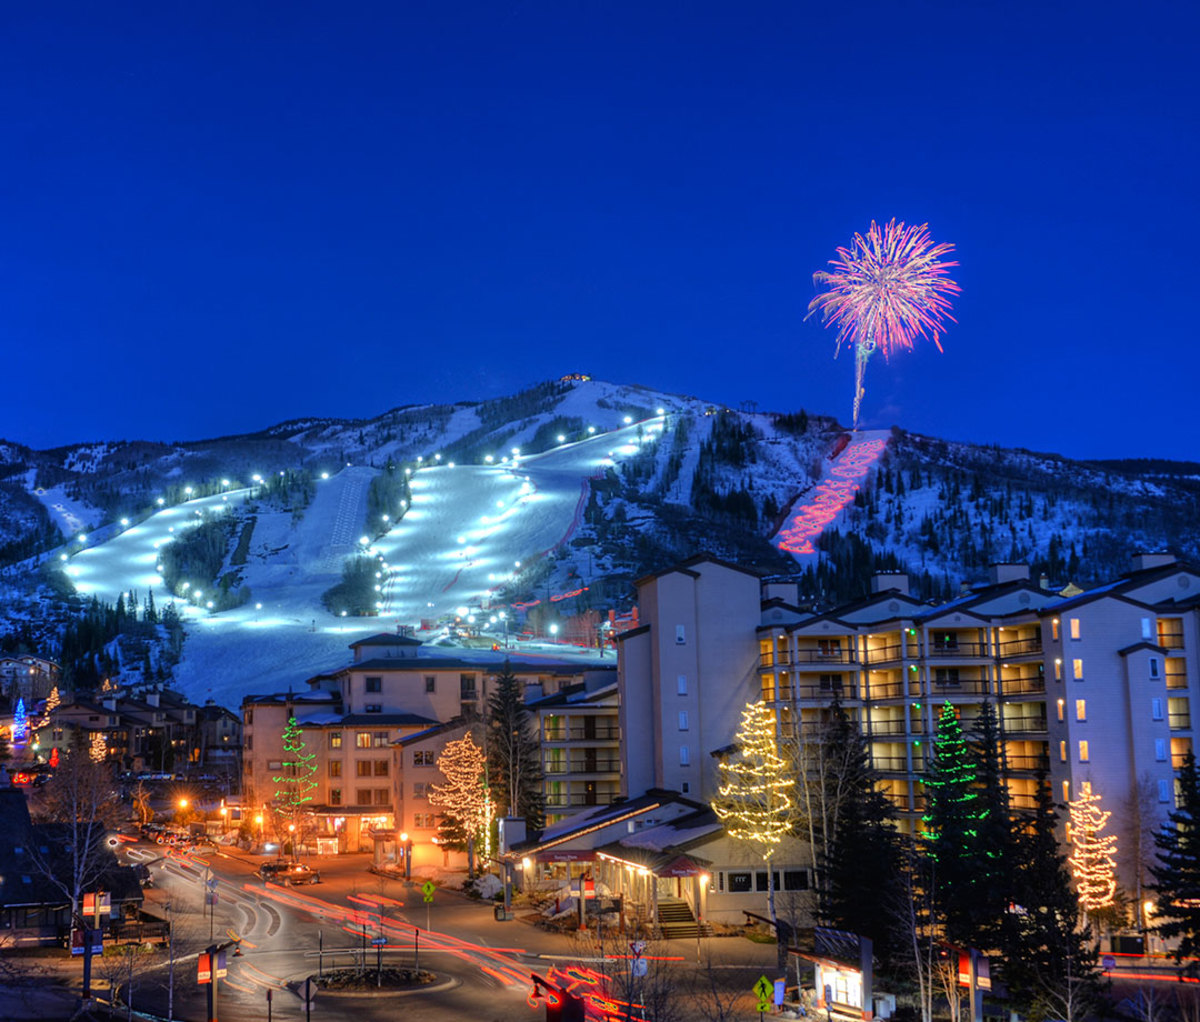 Fireworks at Steamboat Ski Resort in Colorado